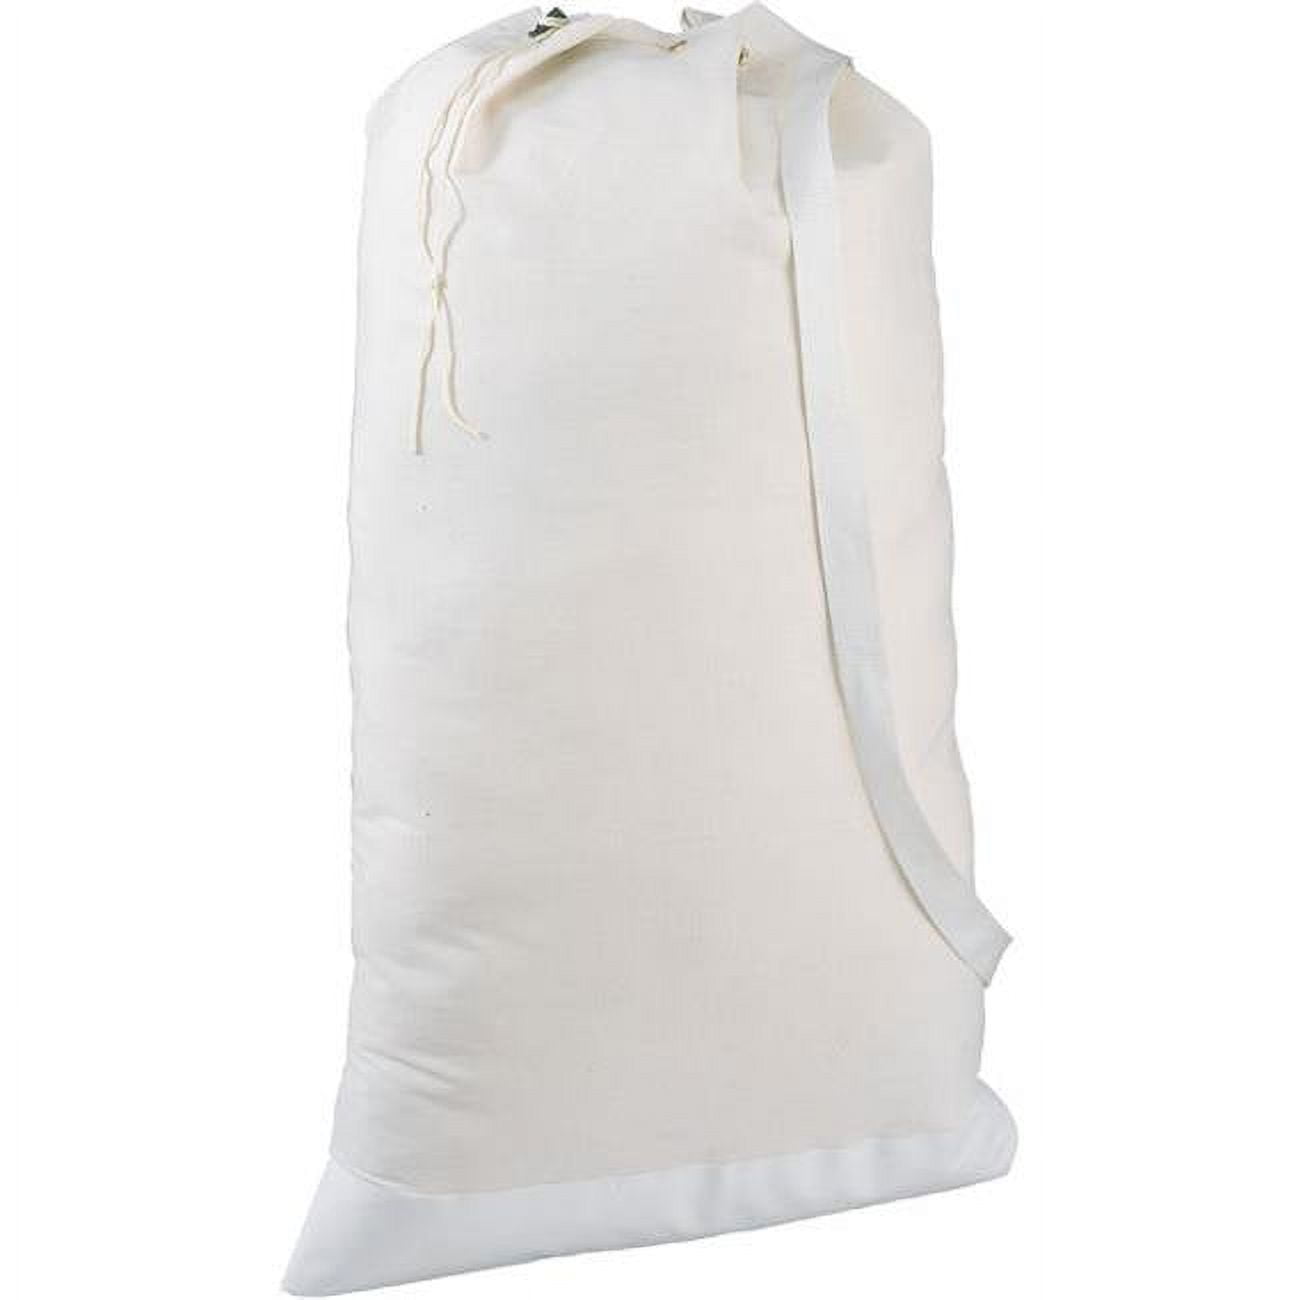 12 Oz Canvas Duffle Bag, White